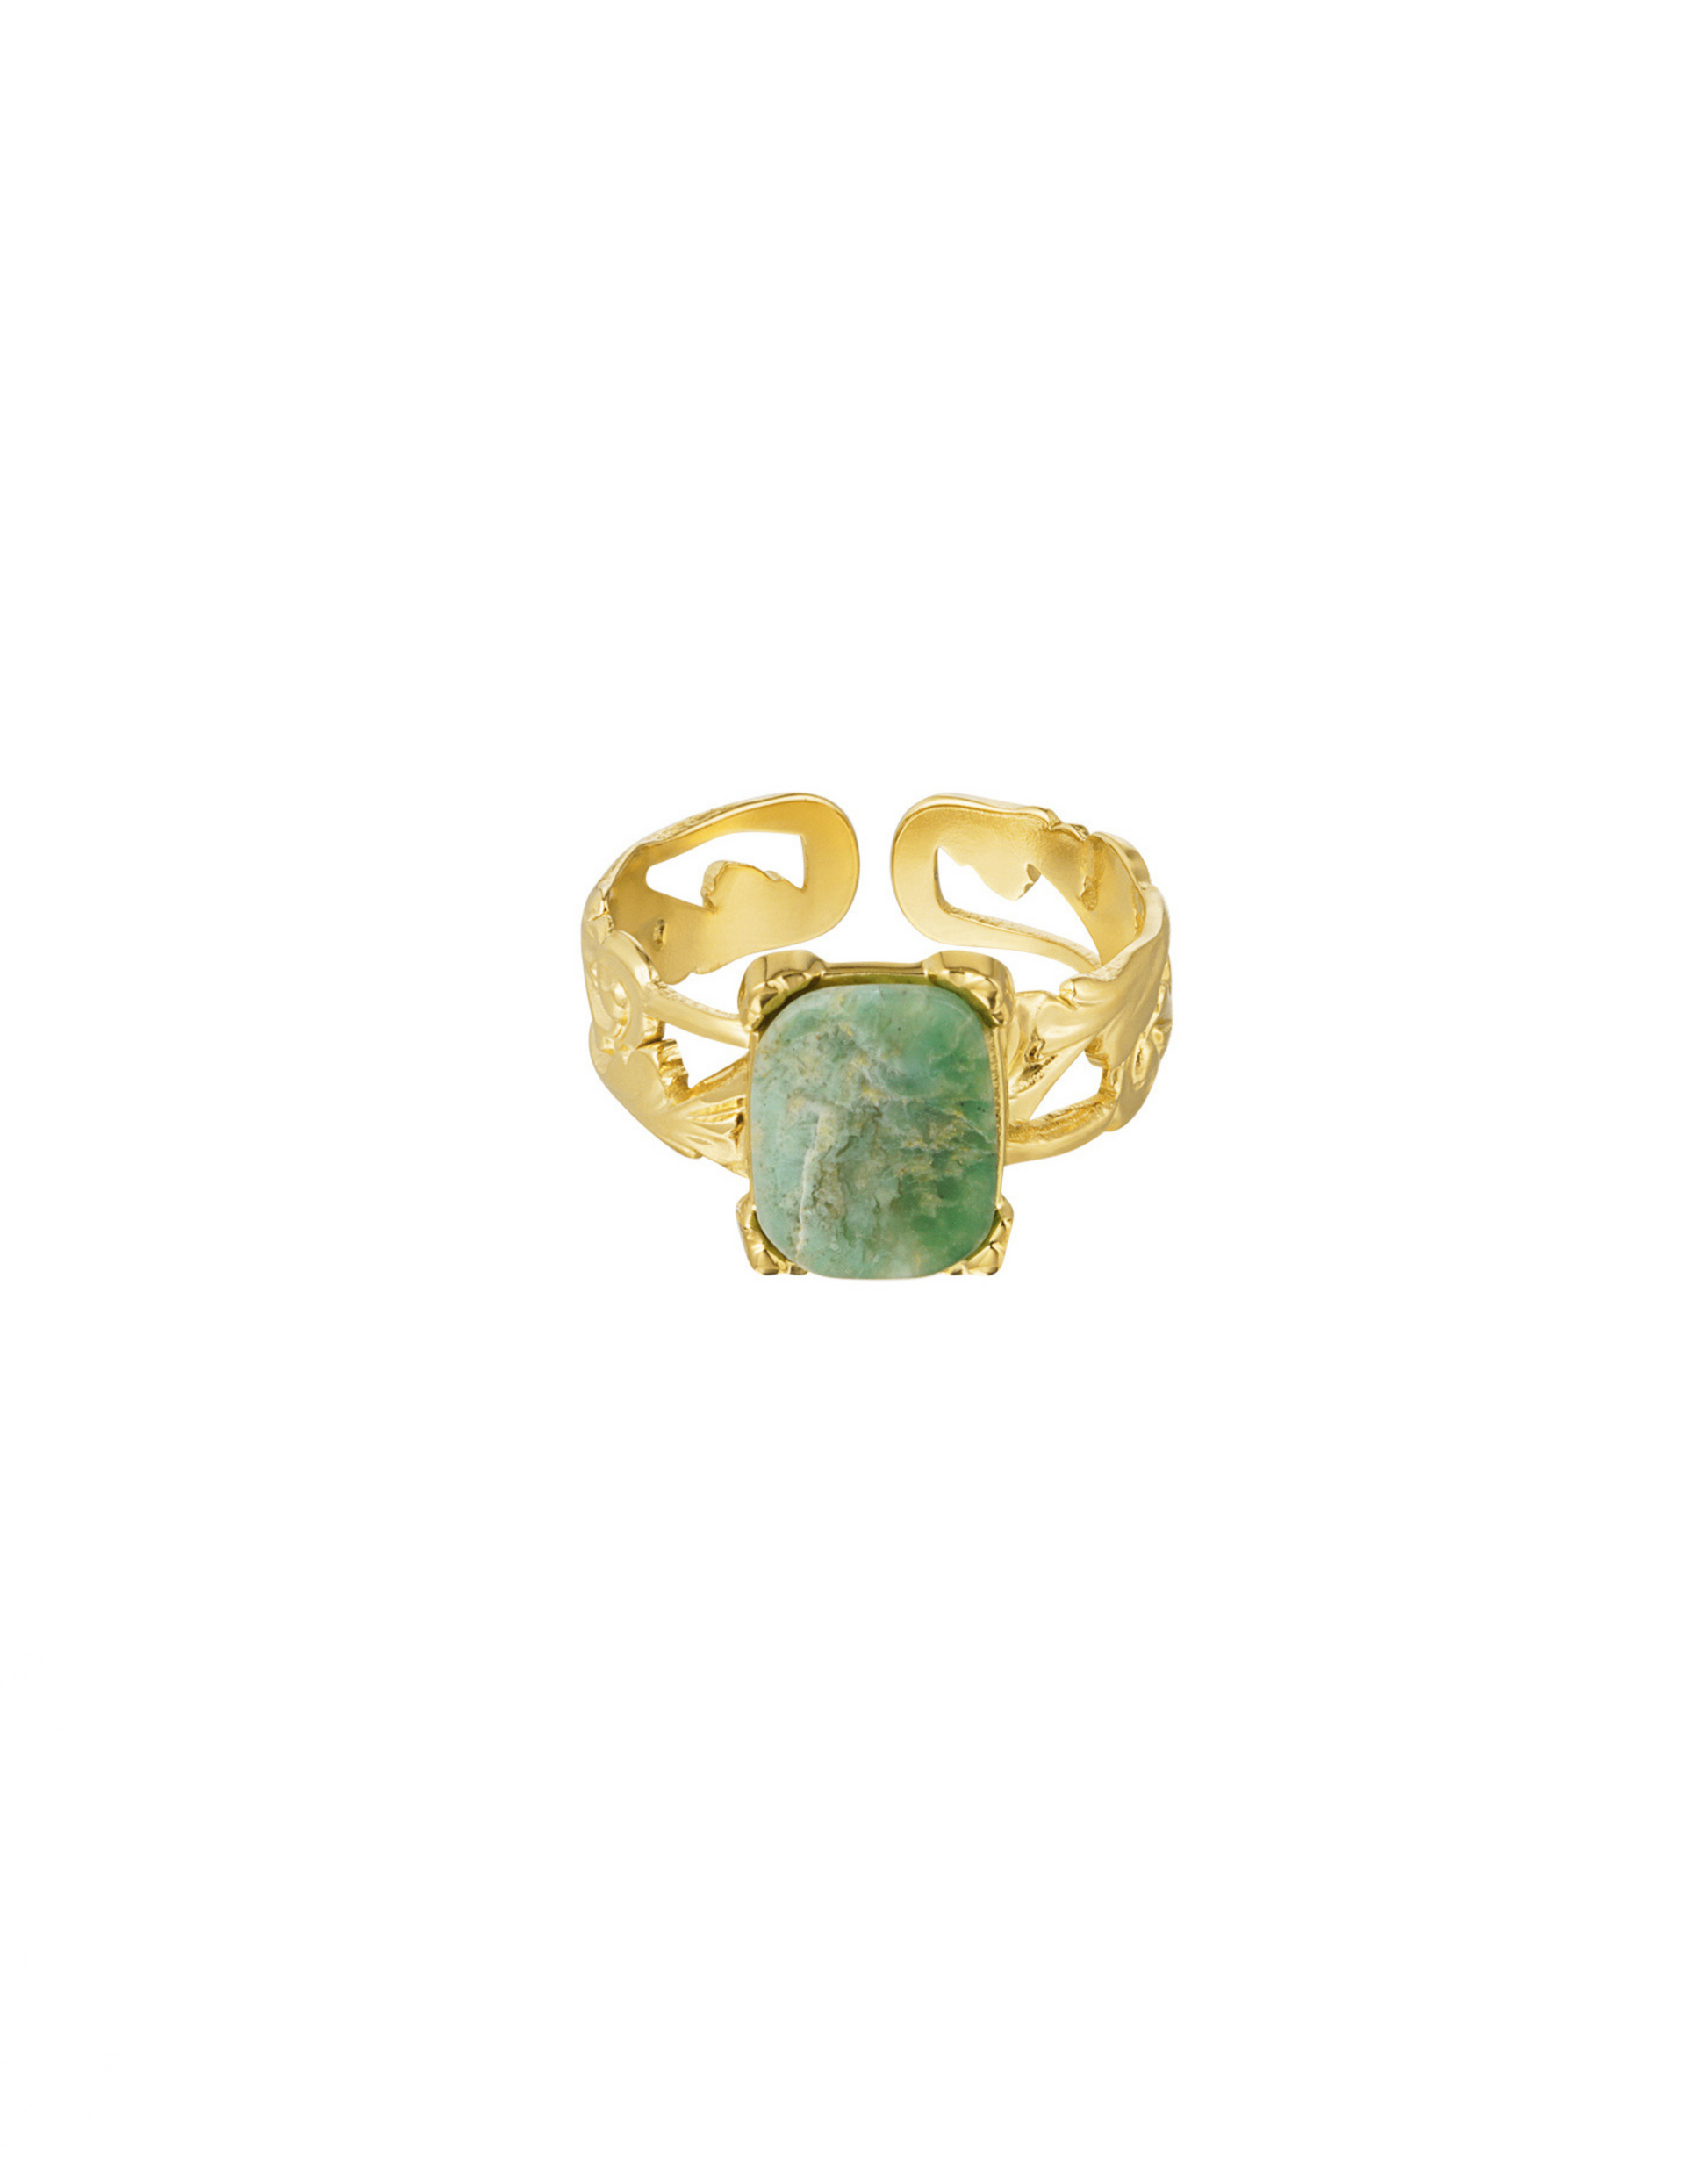 Smuk guld ring i elegant udtryk med grøn sten.  Alle vores ringe er justerbare og kan derfor passes af alle. Materiale: Rustfri stål, 14 karat guldbelægning, sten. 100% nikkelfri Størrelse: Justerbar